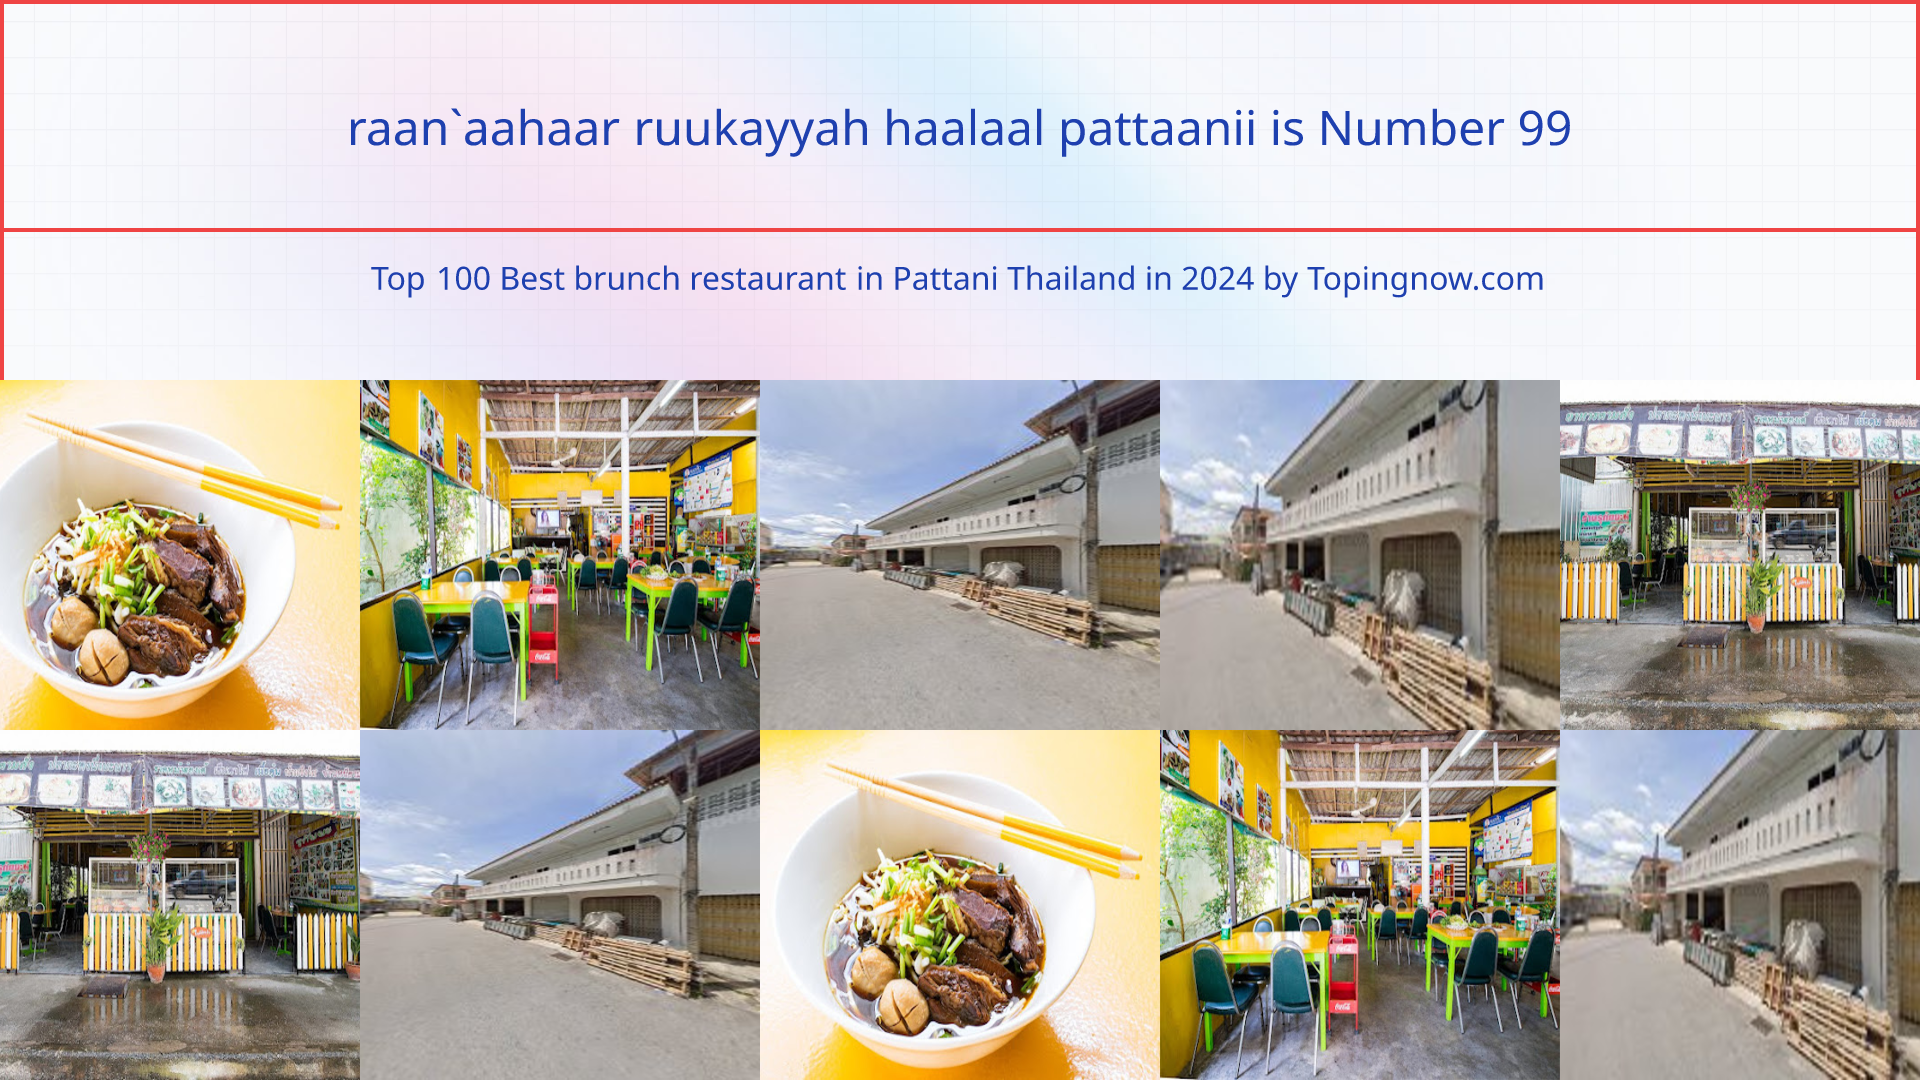 raan`aahaar ruukayyah haalaal pattaanii: Top 100 Best brunch restaurant in Pattani Thailand in 2024